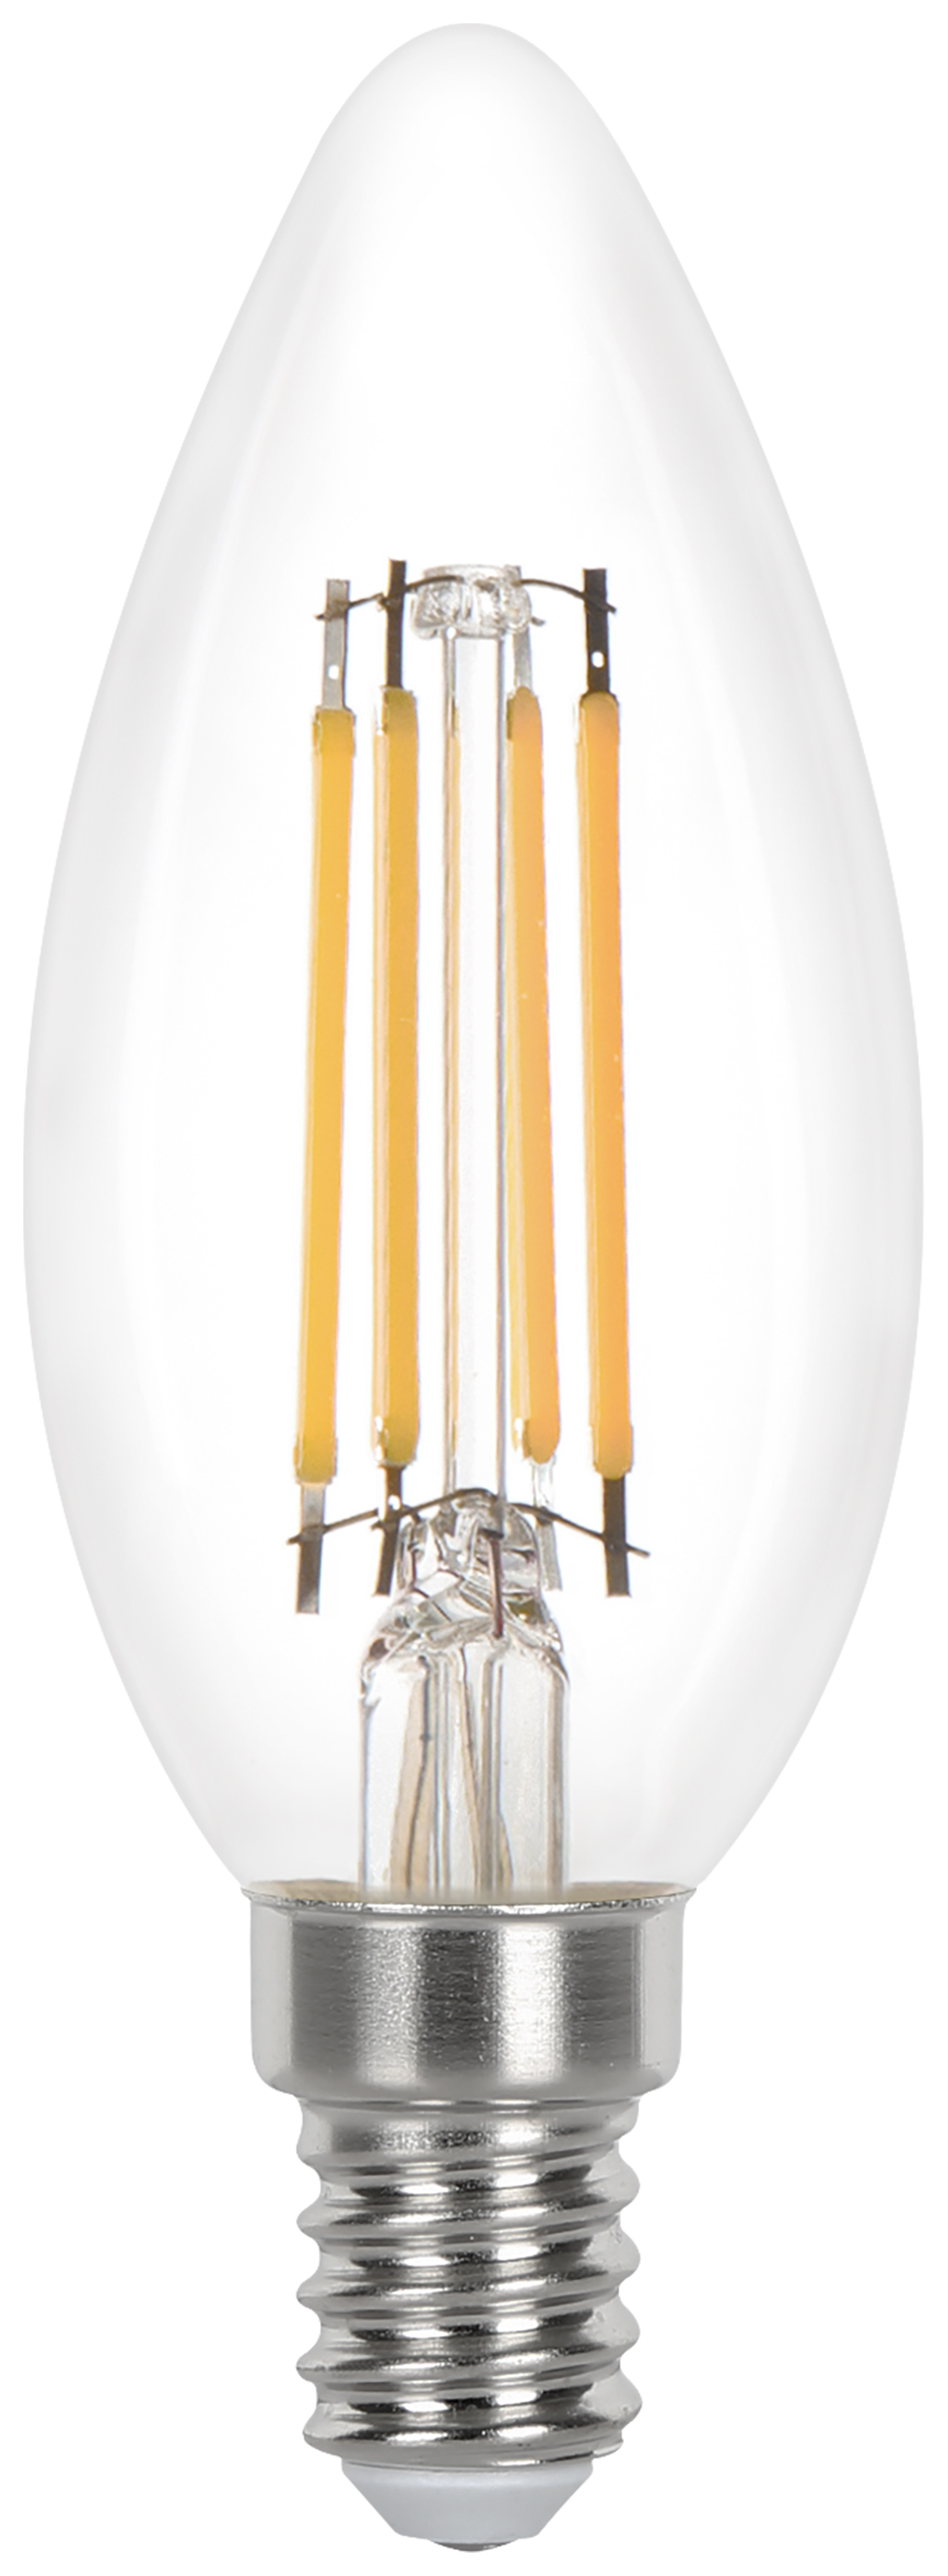 Wickes Non-Dimmable Filament E14 Candle 3.4W Warm White Light Bulb